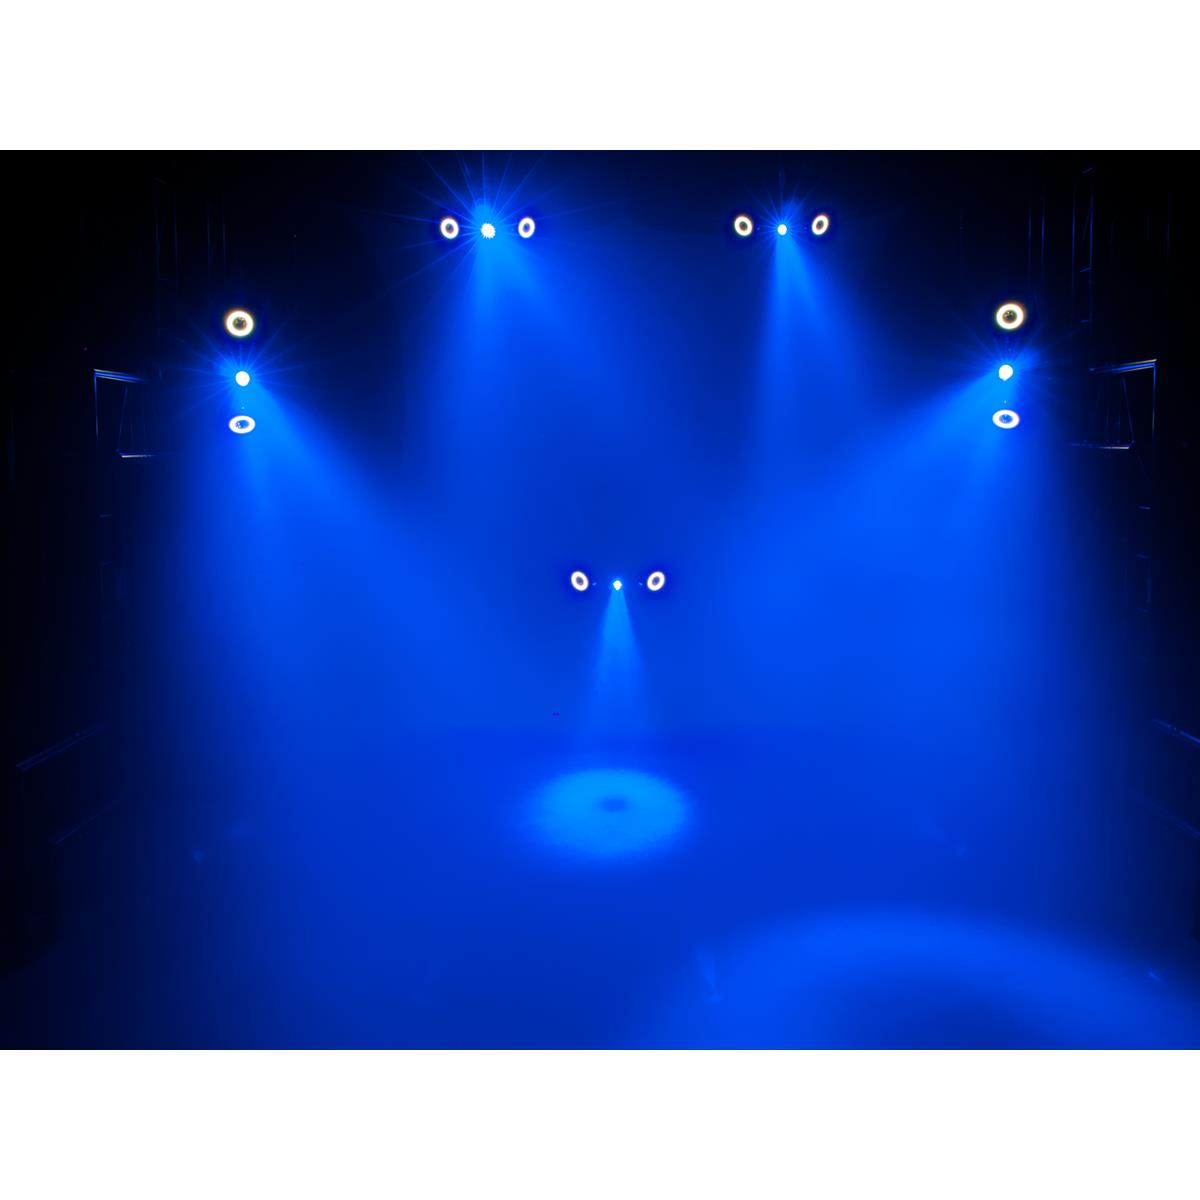 LED Hybrid Strahleneffekt - vollwertiger Party Lichteffekt mit Farben und Strahlen